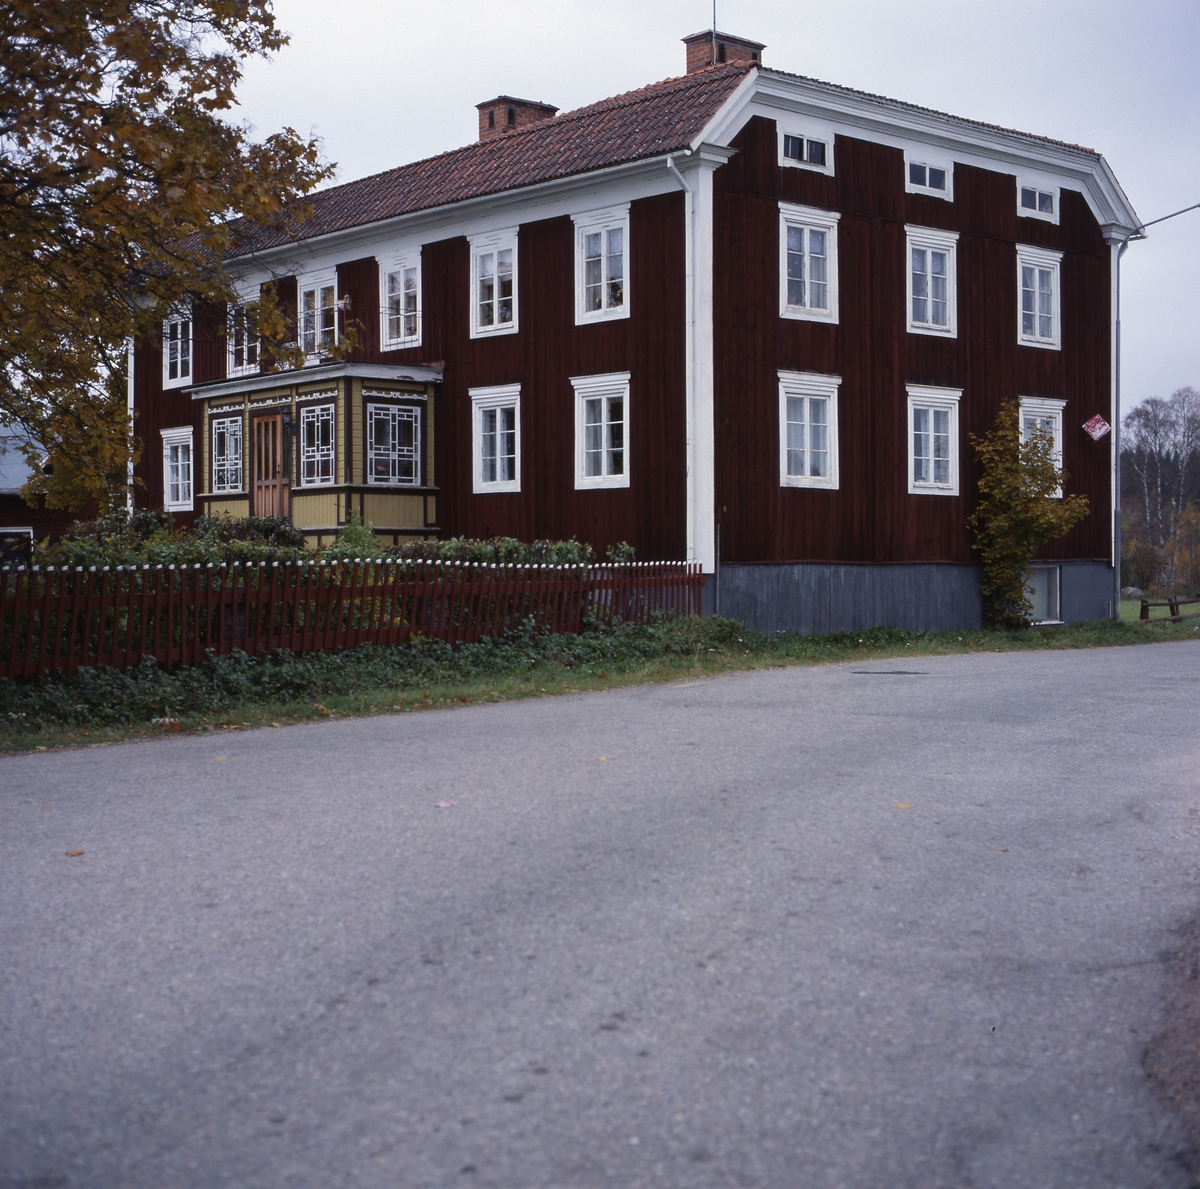 Gården Pallas med valmat tak och inglasad förstukvist, Ovanåker 7 oktober 2001. Farstudörr insatt 1974.